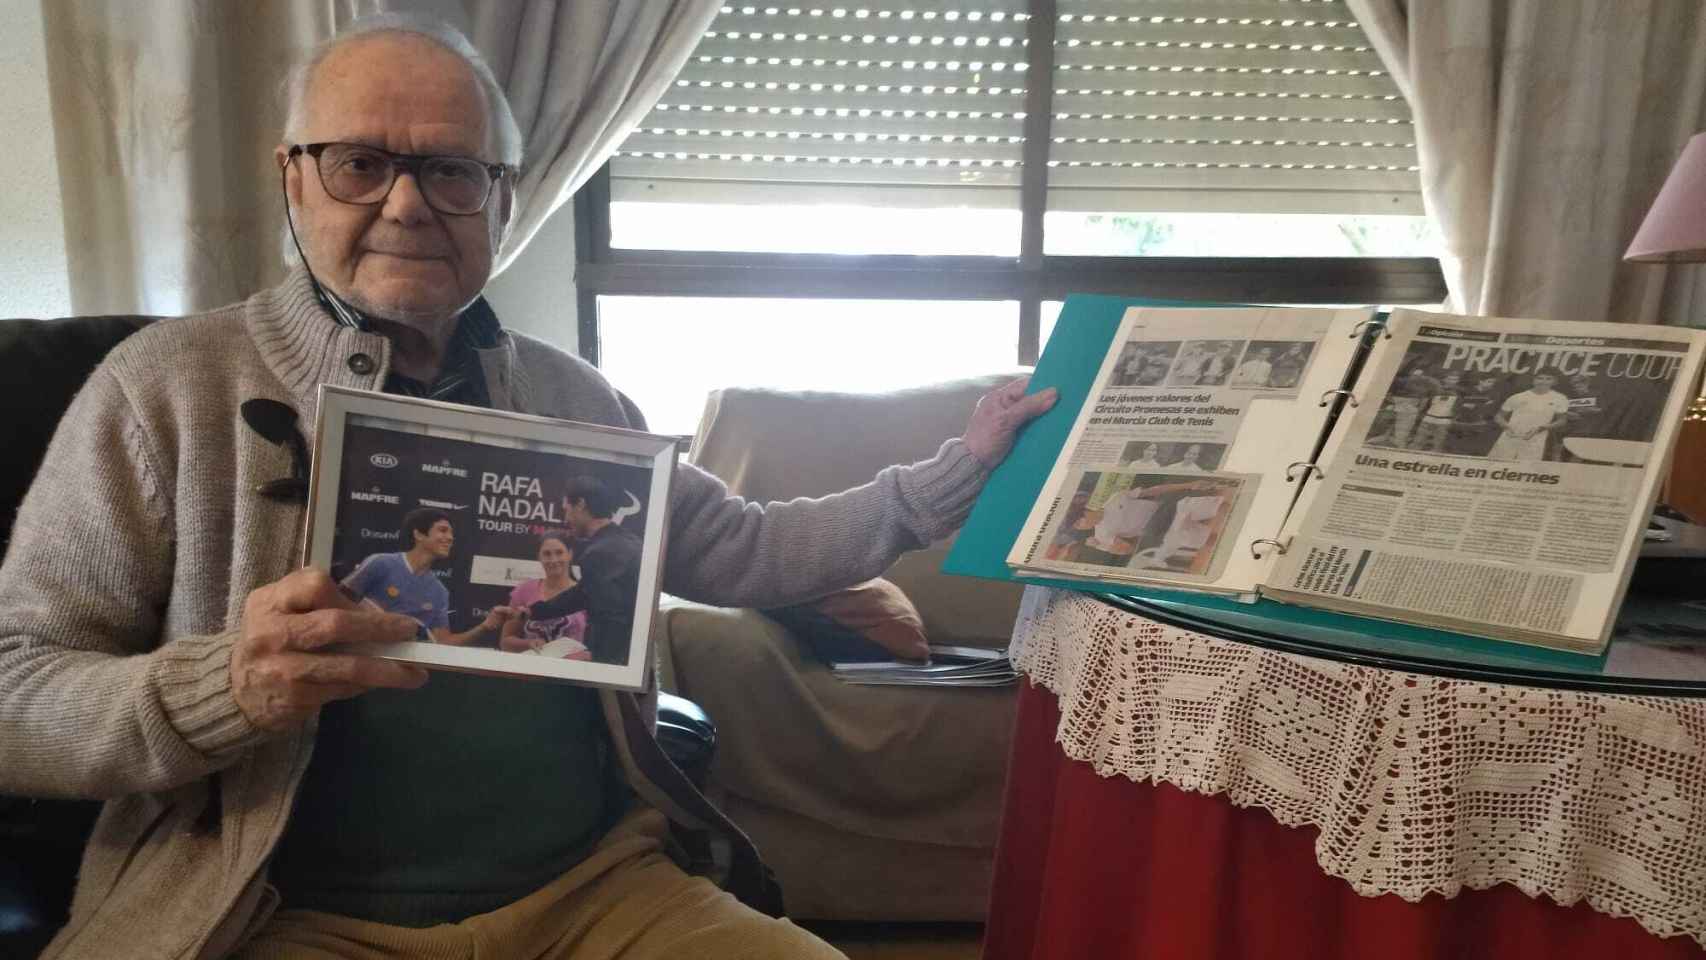 Carlos Alcaraz, abuelo del tenista Carlos Alcaraz, en el salón de su casa de la pedanía murciana de El Palmar, mostrando un álbum con recortes de prensa sobre los éxitos deportivos de su nieto.